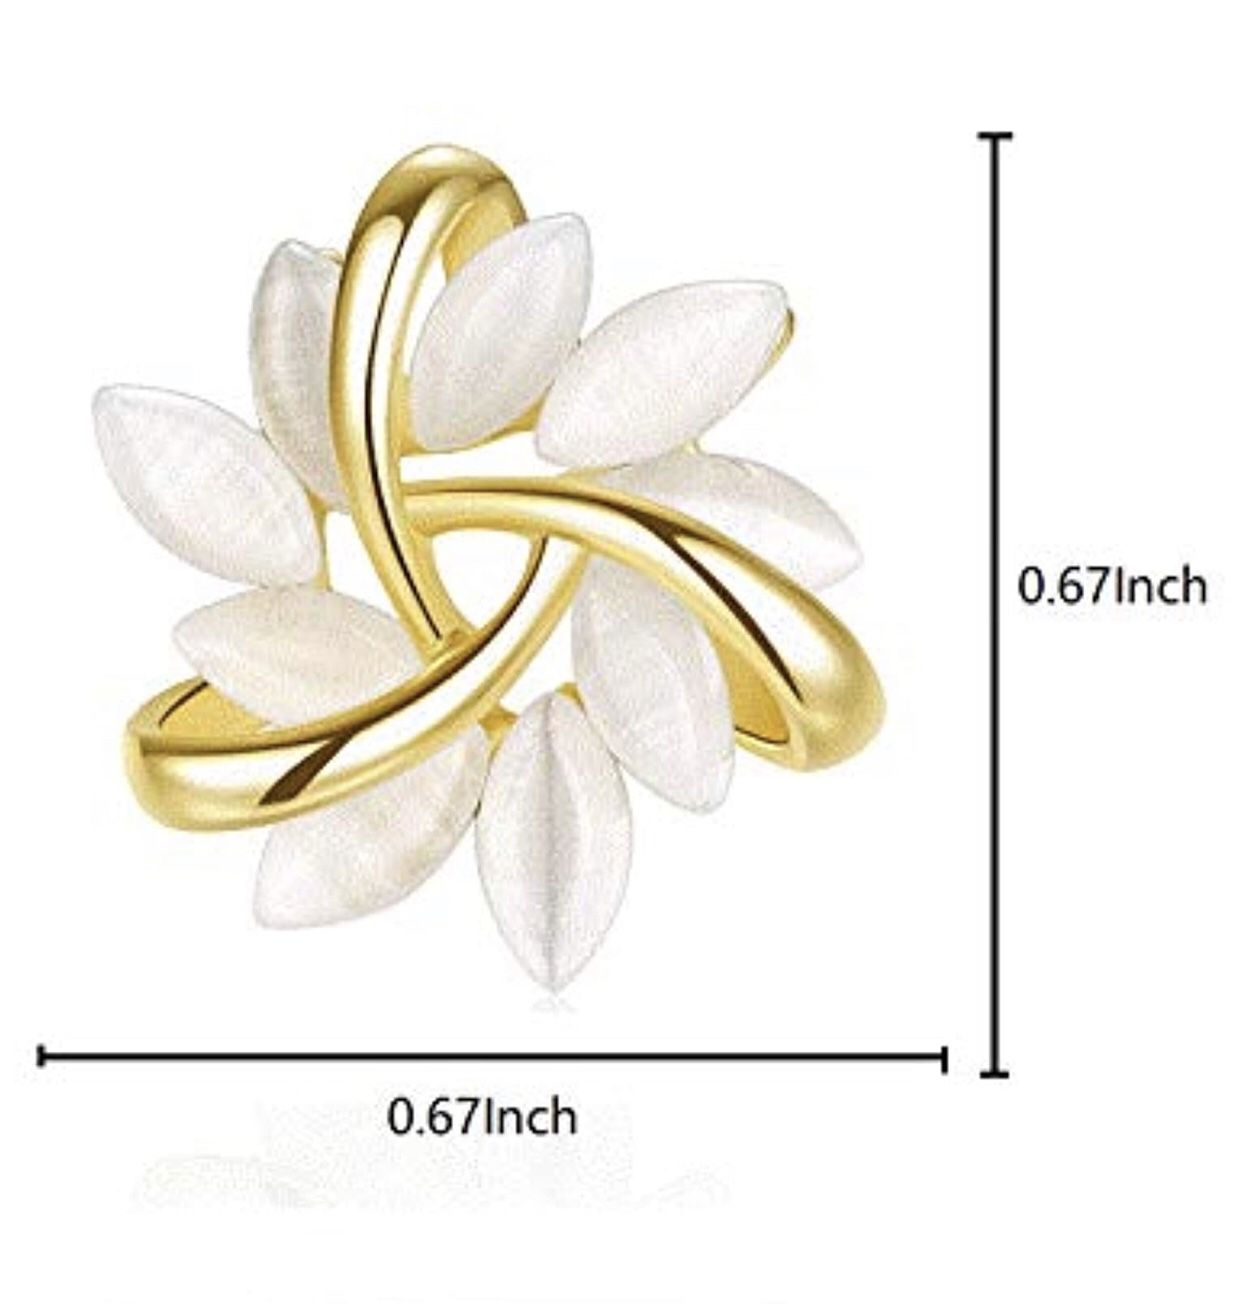 Flower Stud Earrings For Women Girls With White Moonstone Petal-Shaped Gold